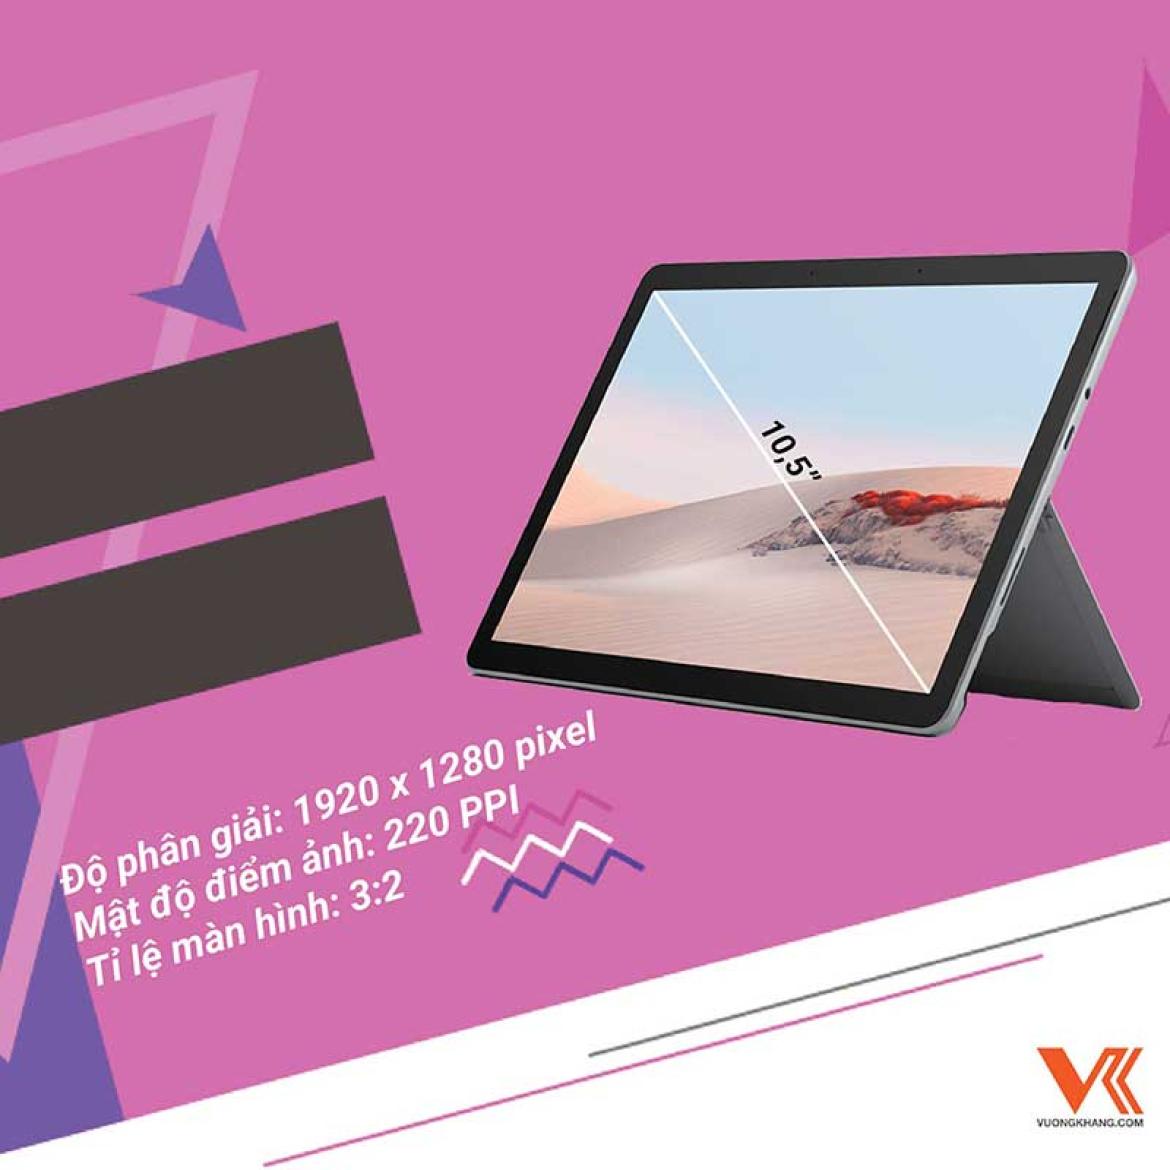 Tổng quan về chiếc tablet nhỏ nhất của Microsoft - Surface Go 2 mới ra mắt 2020